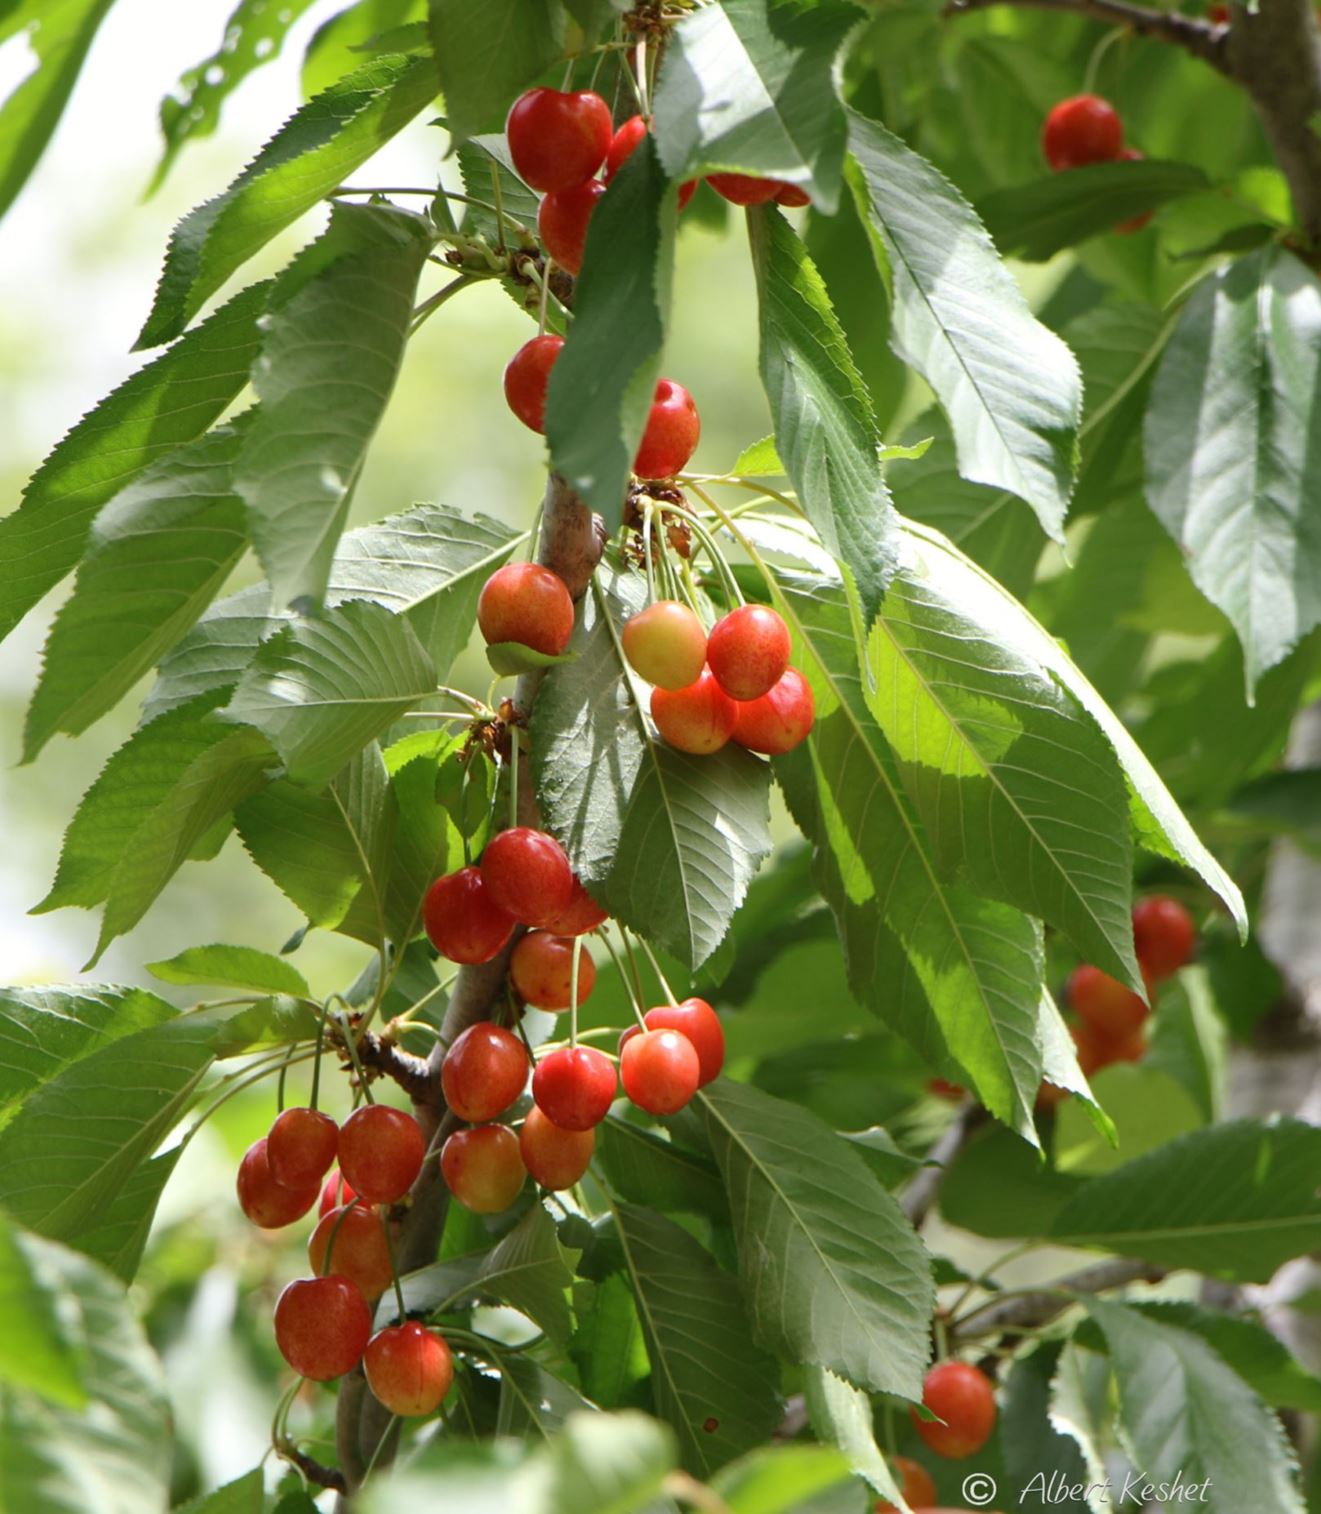 Prunus avium 'Lapins' - Mazzard Cherry 'Lapins', Wild Cherry 'Lapins', דובדבן מתוק 'לפינס'